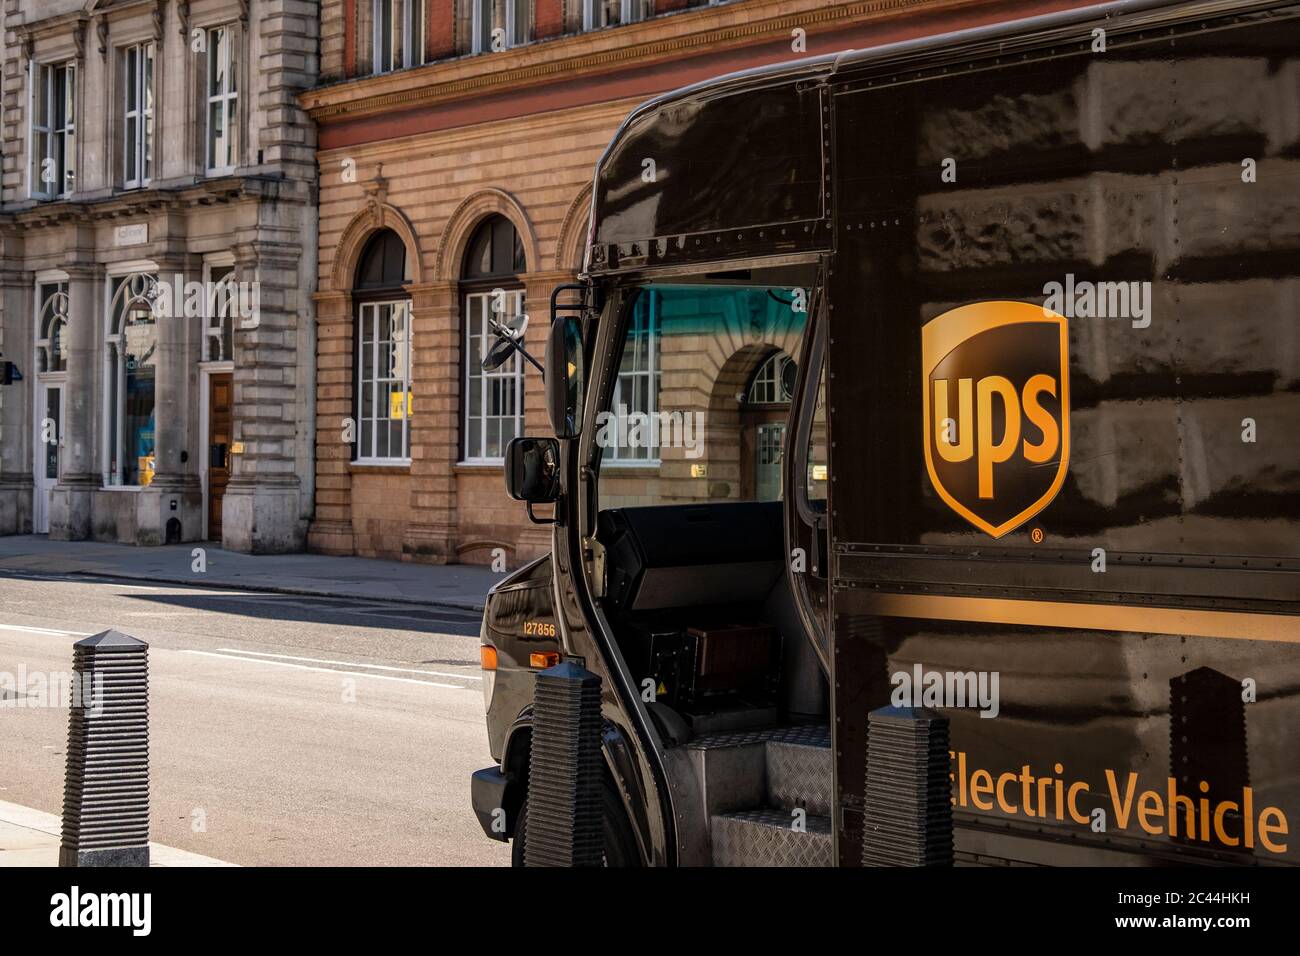 LONDRA - GIUGNO 2020: UPS o United Parcel Service Truck, una multinazionale americana di consegna di pacchi Foto Stock